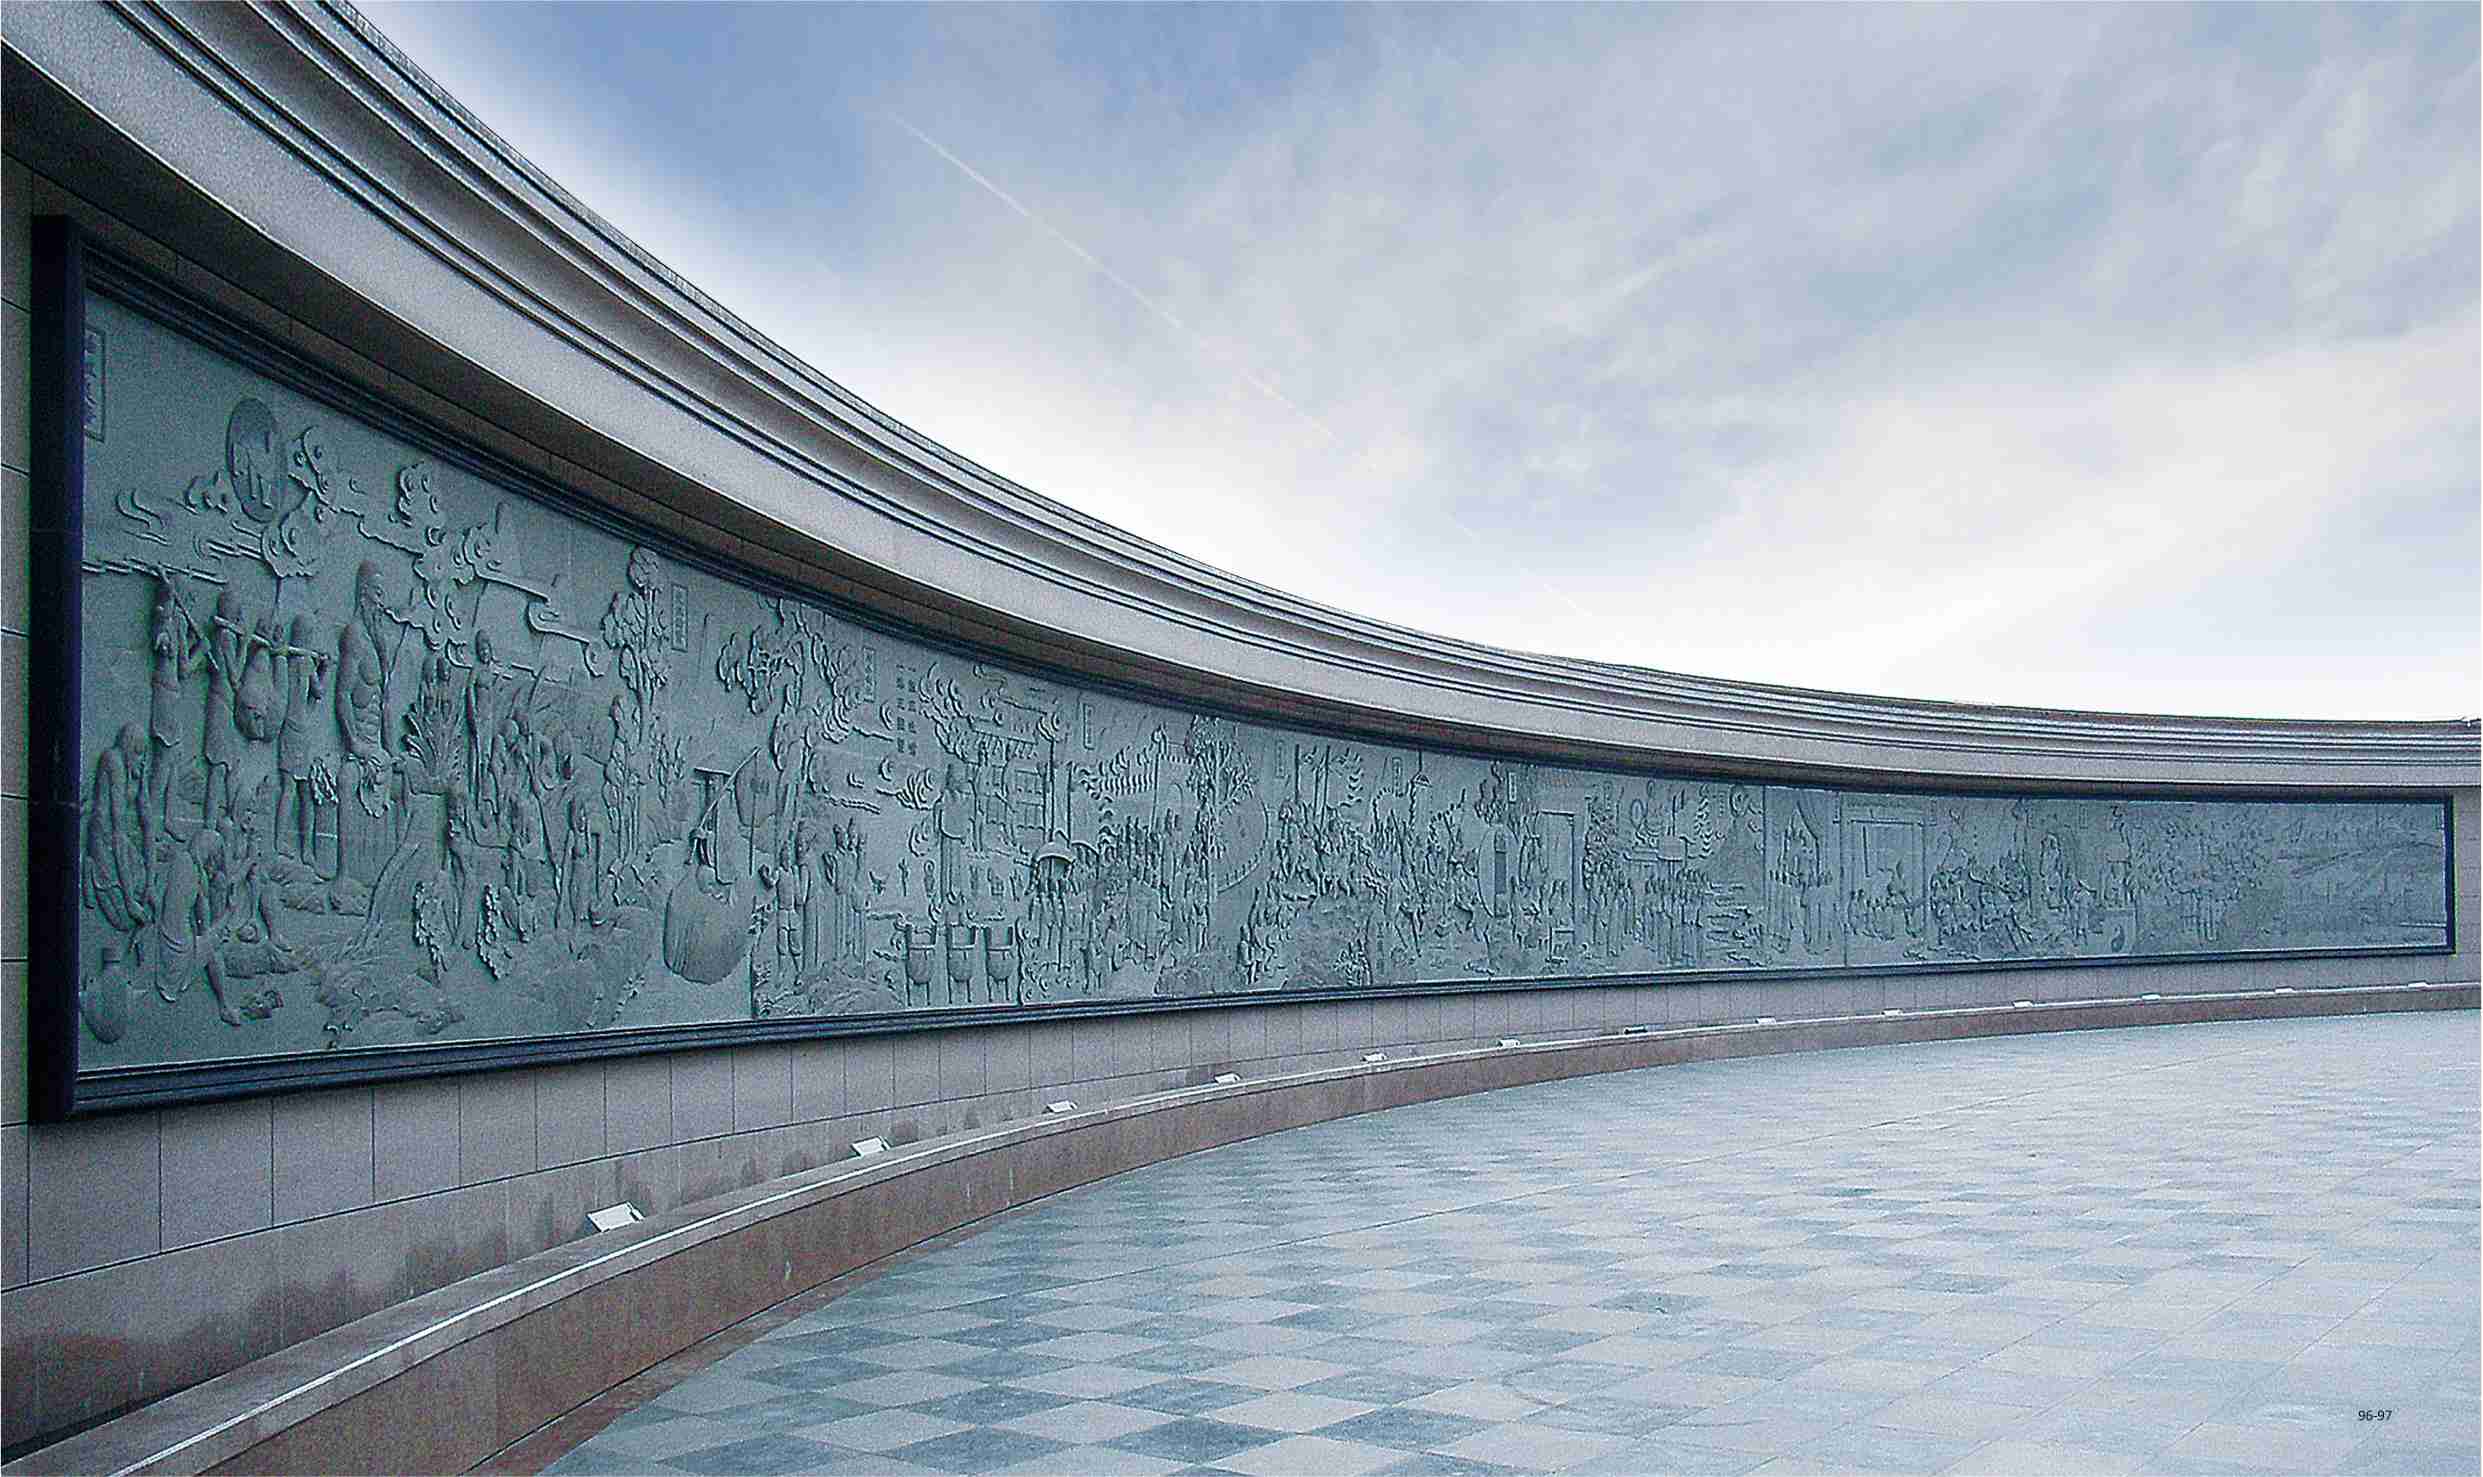 吴德强的作品-吴德强《历史文化浮雕墙》位于宝鸡市行政广场